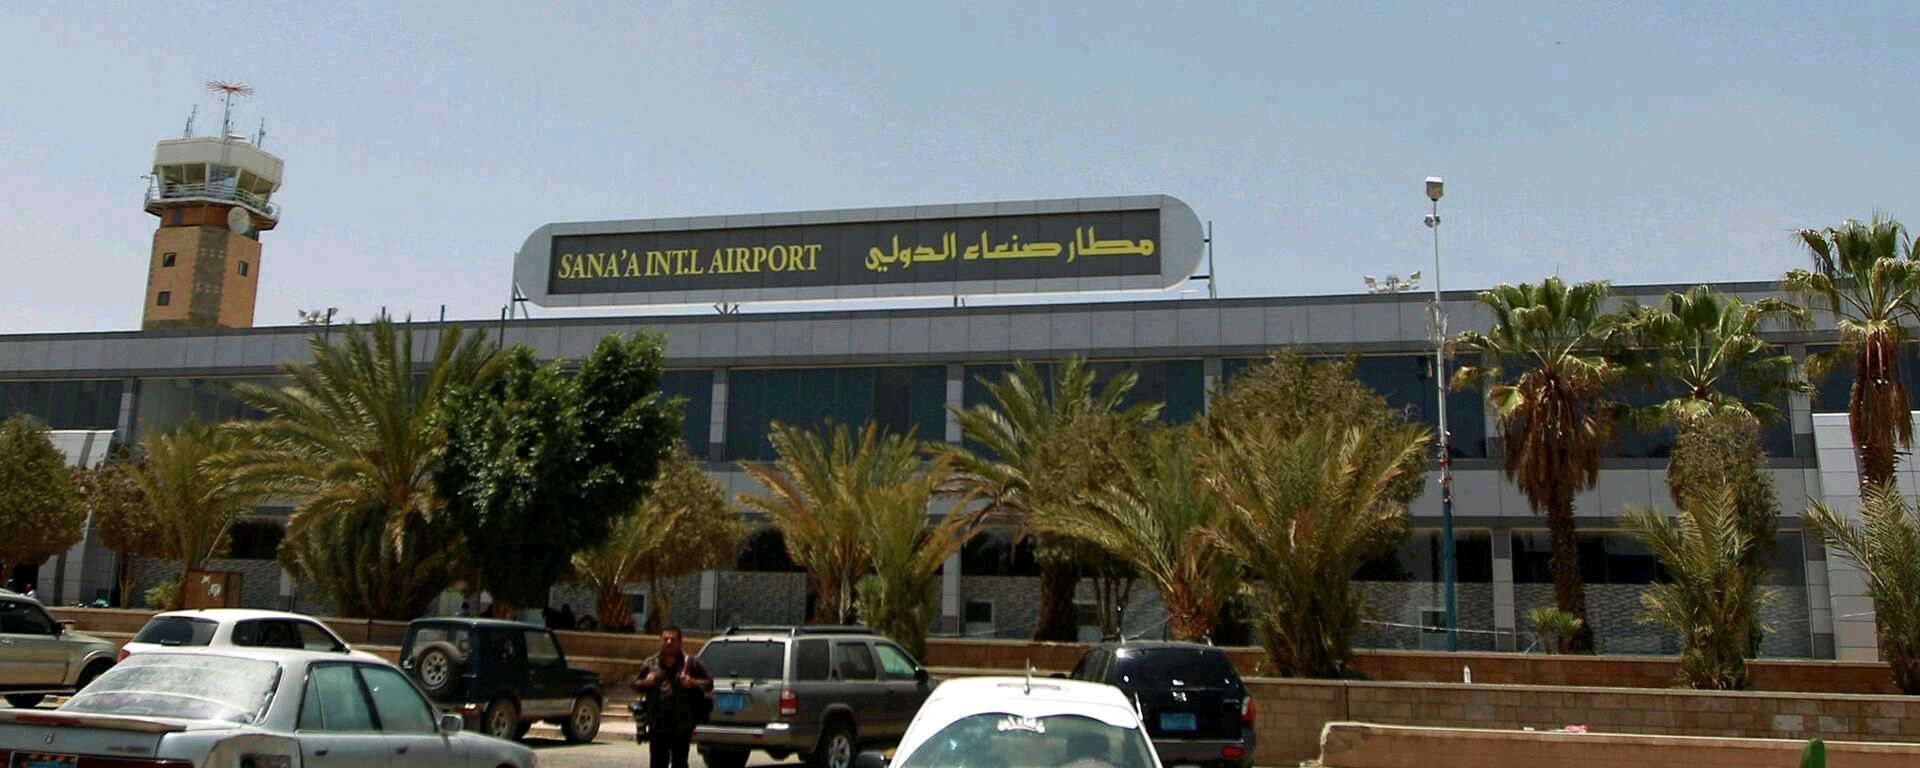 صحفي: لهذا السبب سيتحول مطار صنعاء إلى مطار خاص بهؤلاء